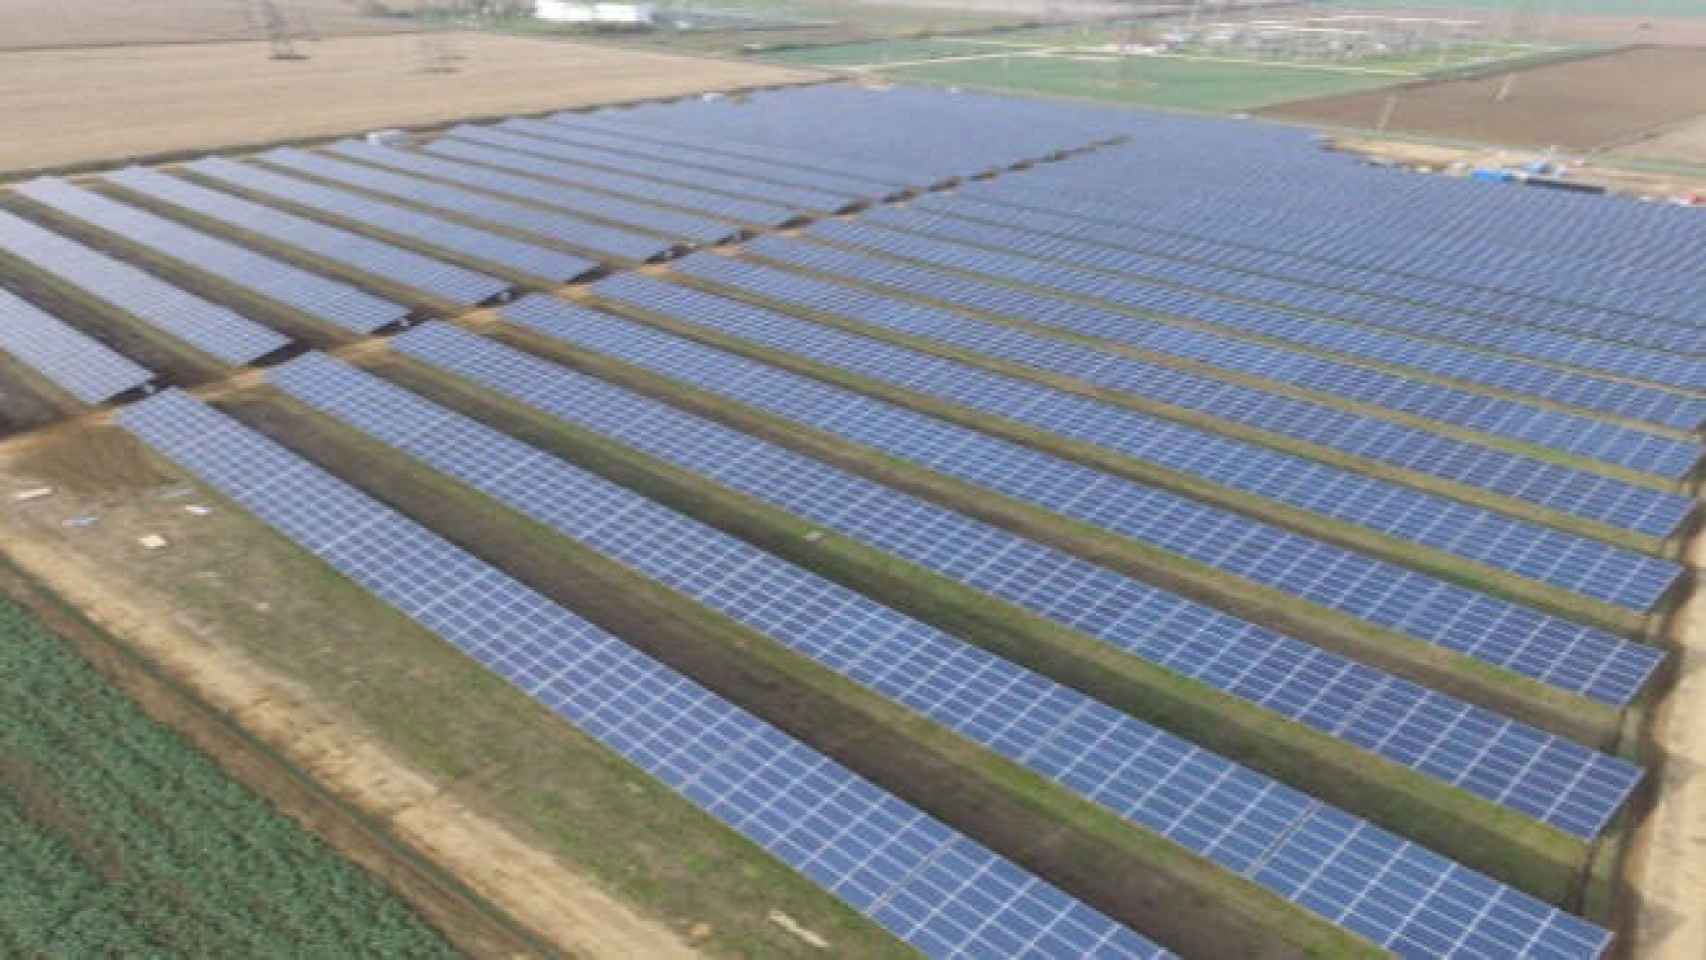 Parque fotovoltaico instalado por la empresa ciudadrealeña I+D Energías. Foto: I+D ENERGÍAS